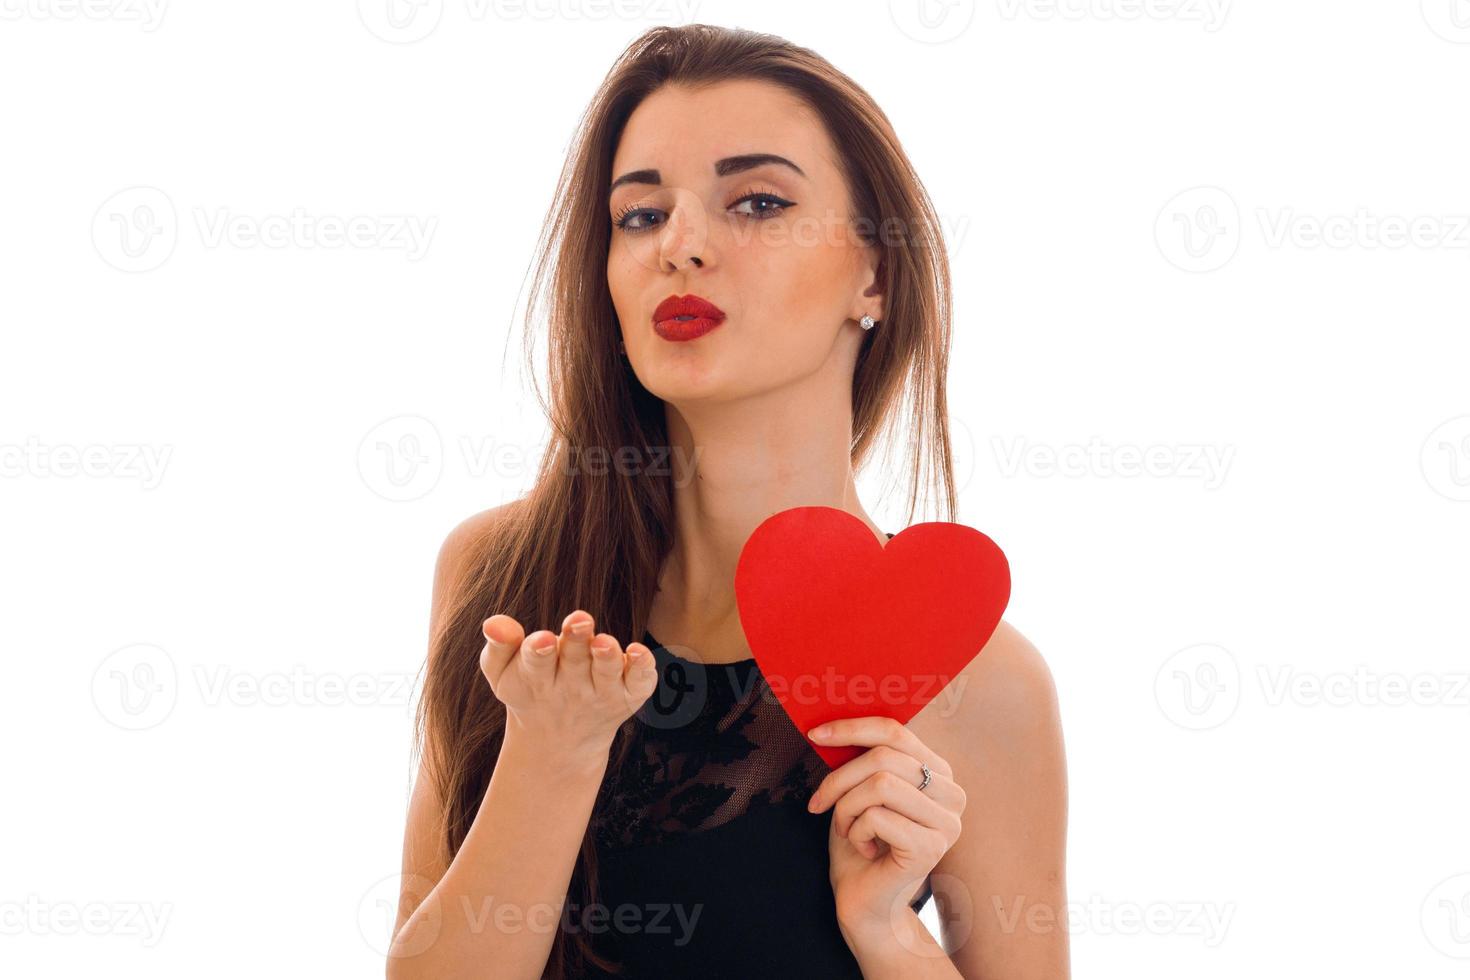 jovem mulher encantadora com lábios vermelhos se preparando para comemorar o dia dos namorados com o símbolo do coração no estúdio isolado no fundo branco foto